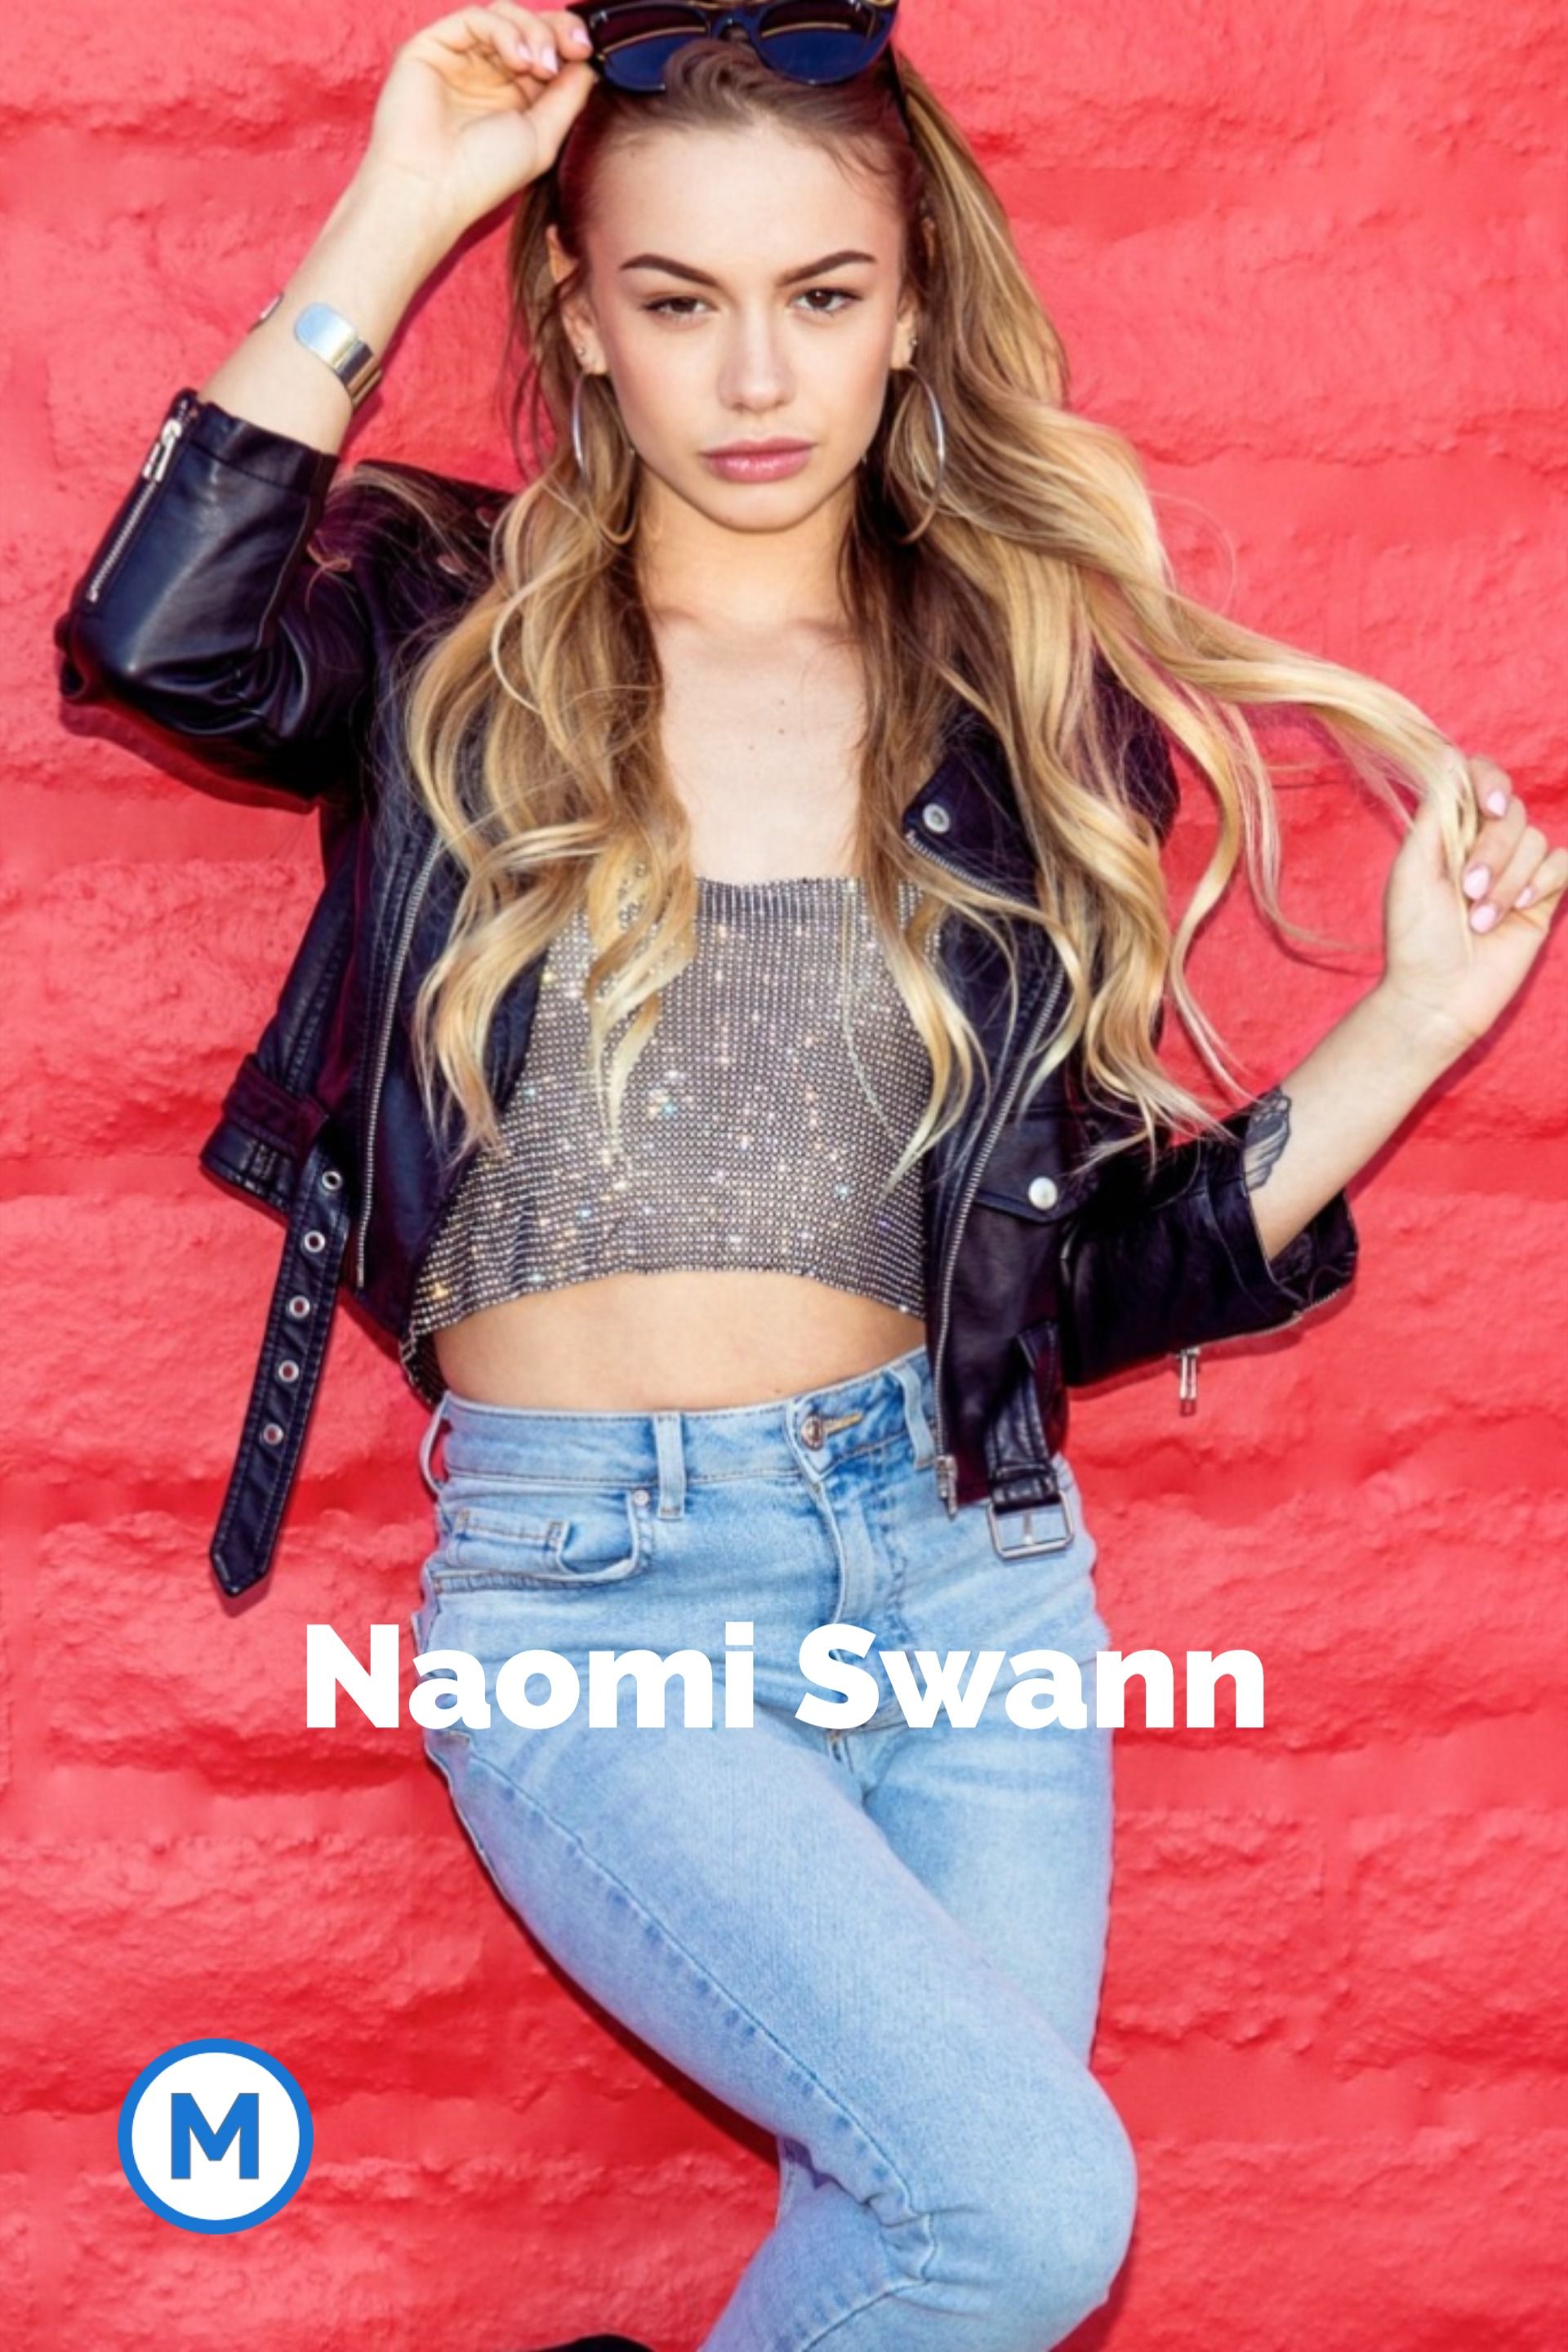 Naomi swann instagram